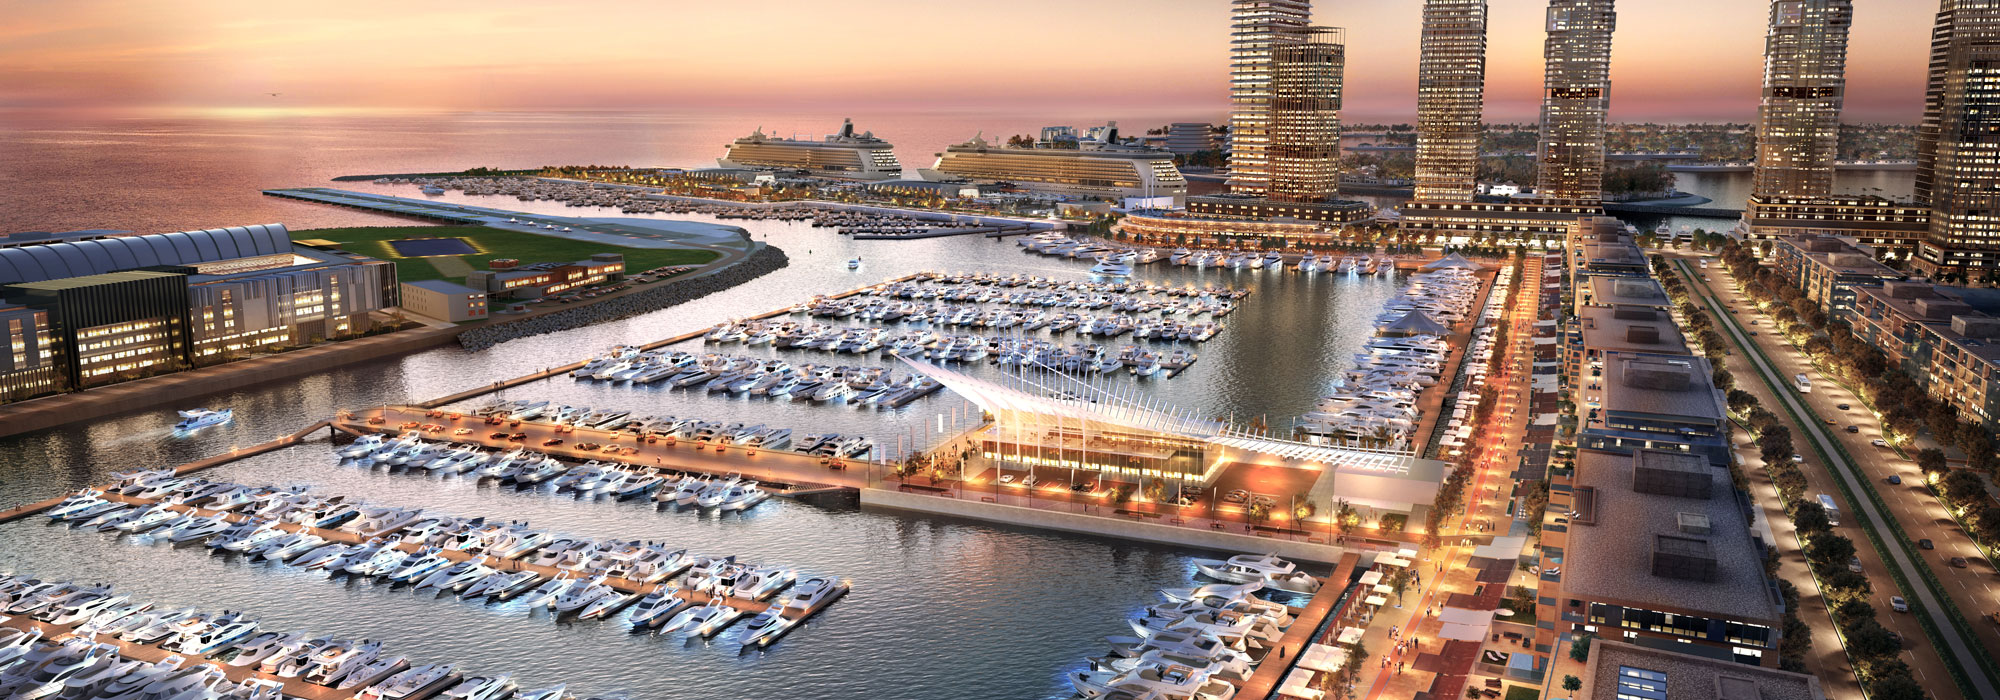 Der Dubai Harbour Yachthafen